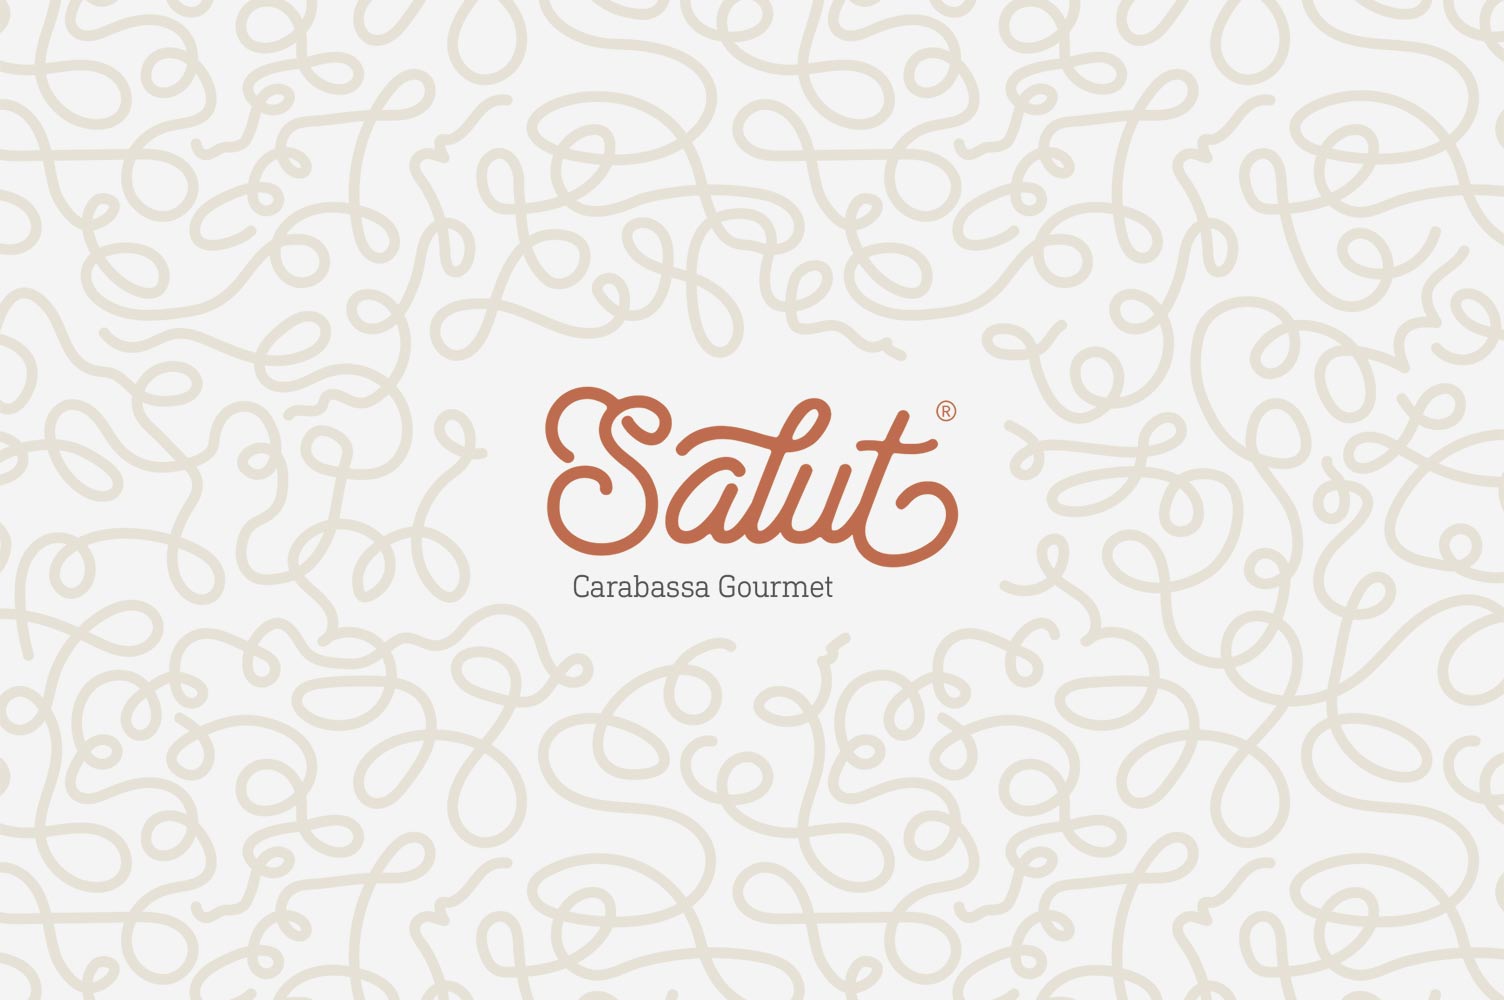 Diseño de marca completa Salut v1